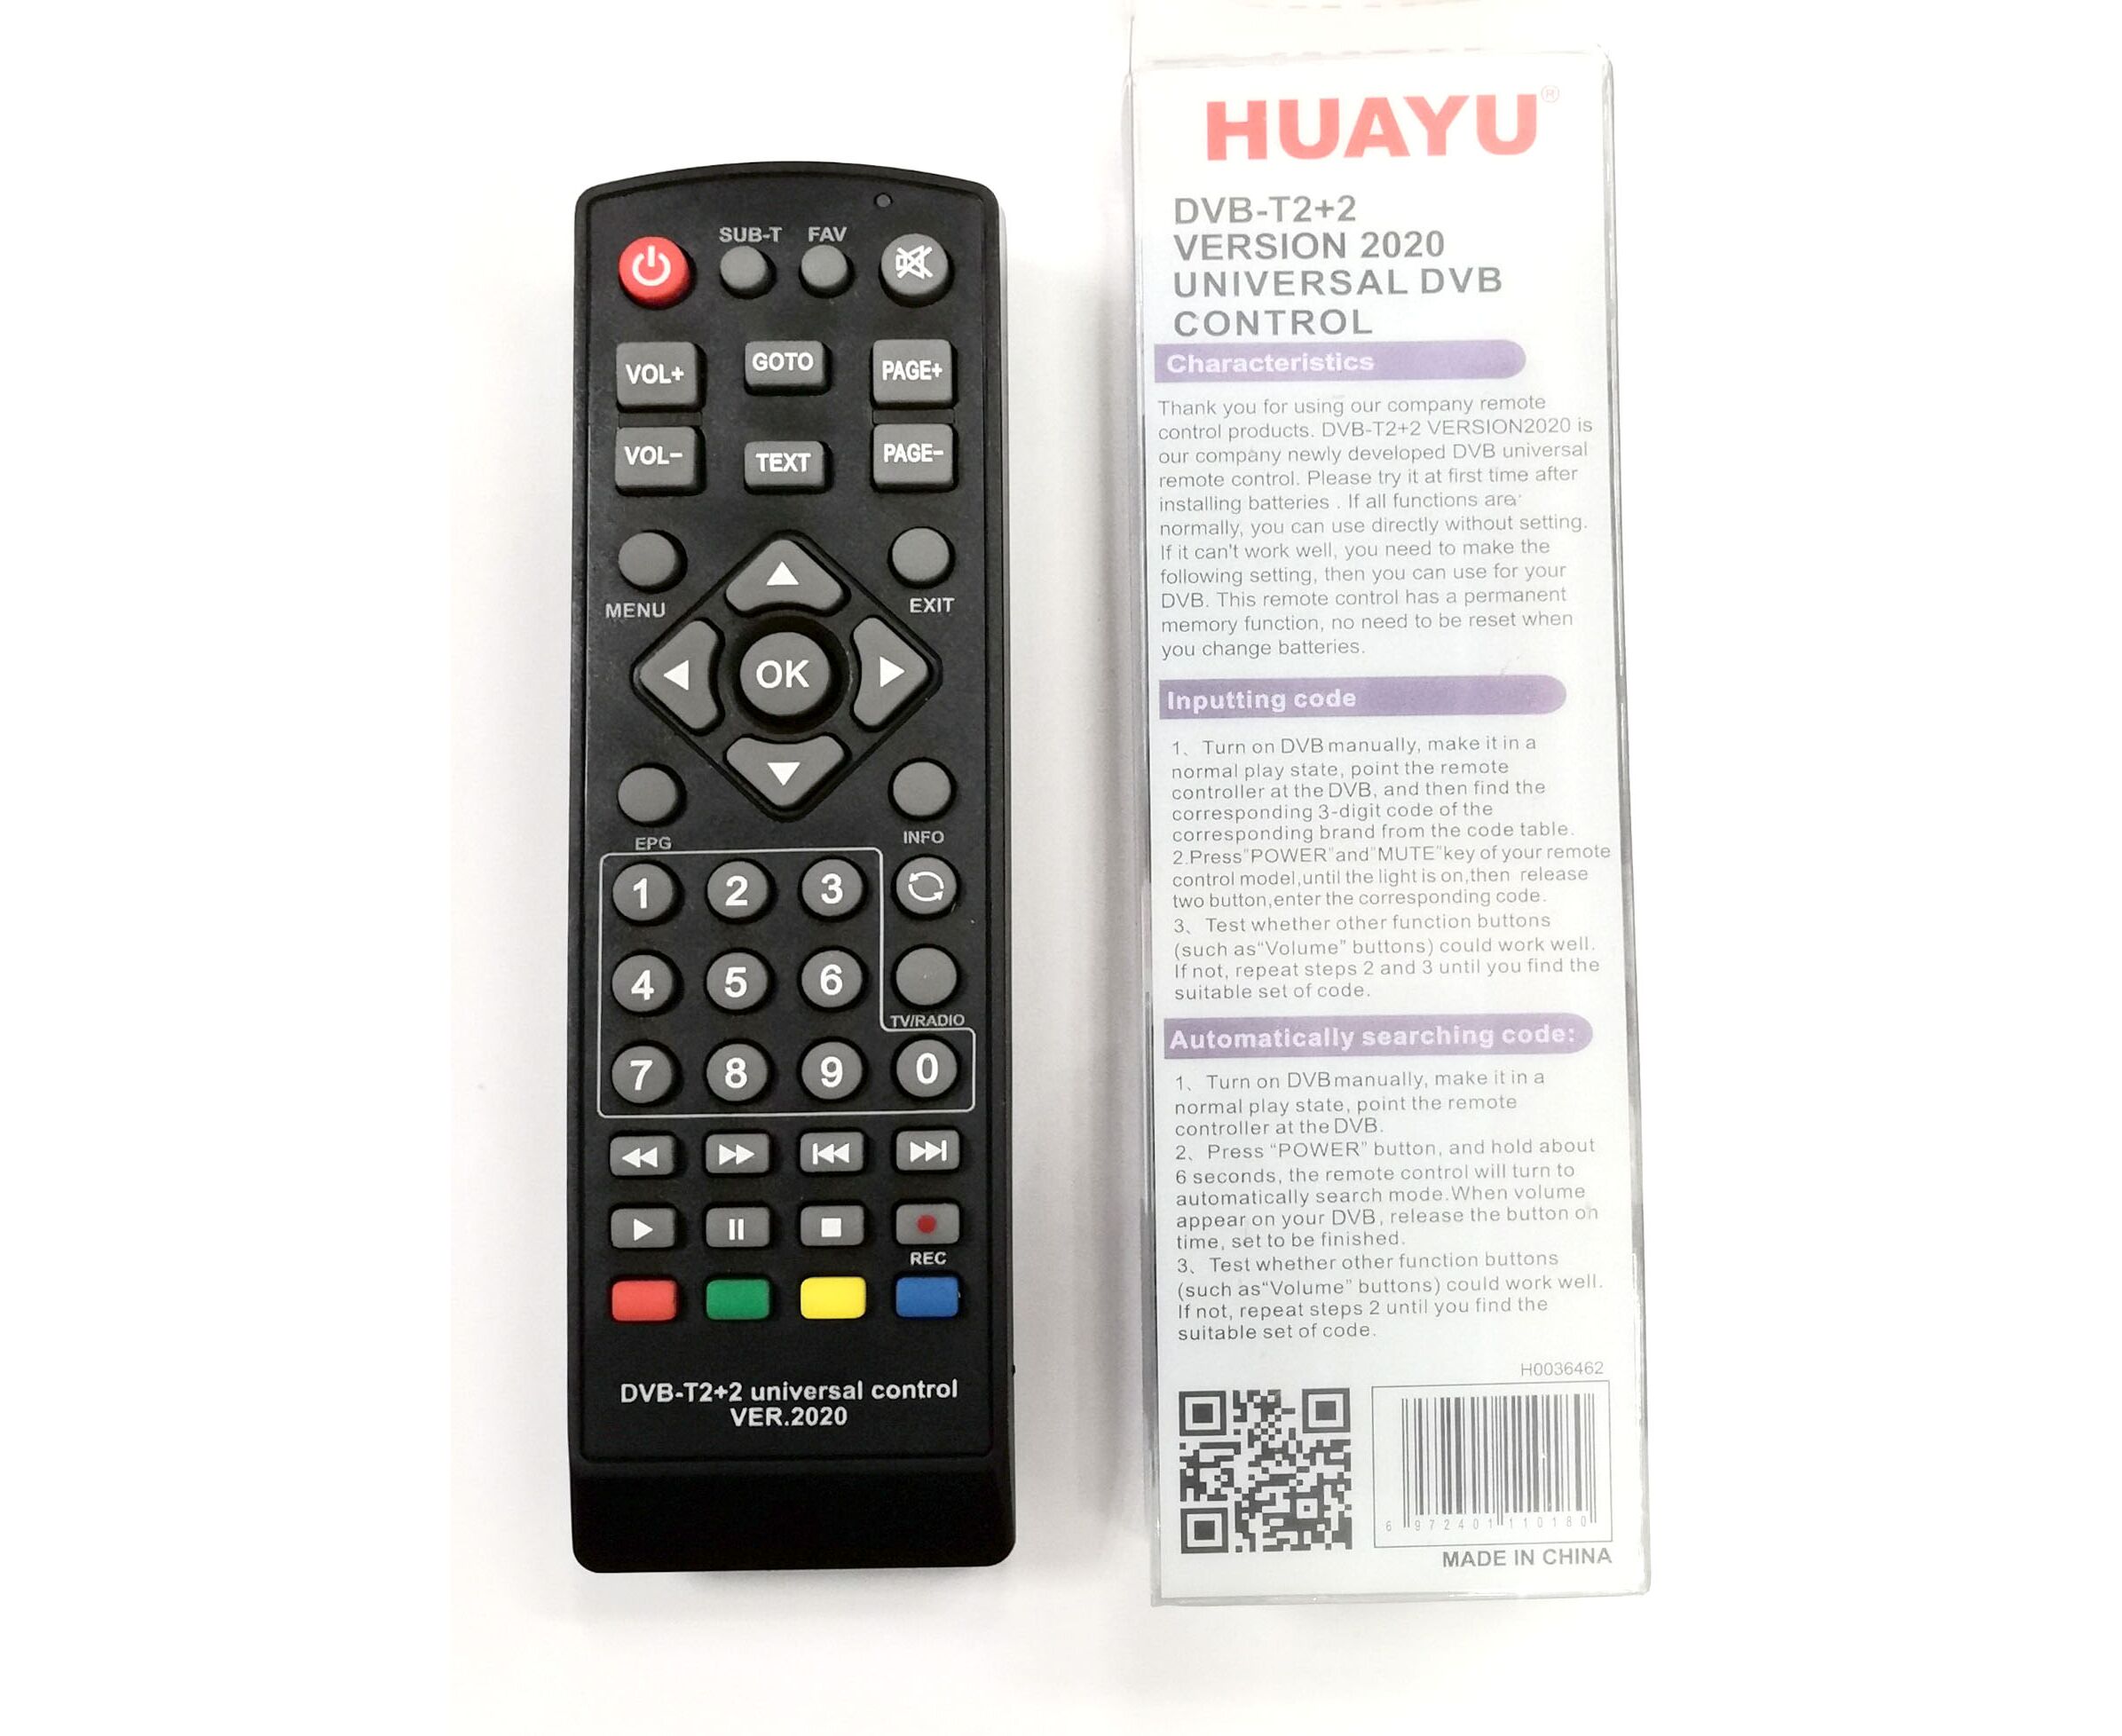 Универсальный пульт для приставки huayu. Пульт универсальный Huayu для приставок DVB-t2+2 версия 2020. Универсальный пульт Huayu DVB-t2+t3. Универсальный пульт Huayu DVB-t2+2 ver.2020. Универсальный пульт Huayu DVB-t2+TV ver.2020.